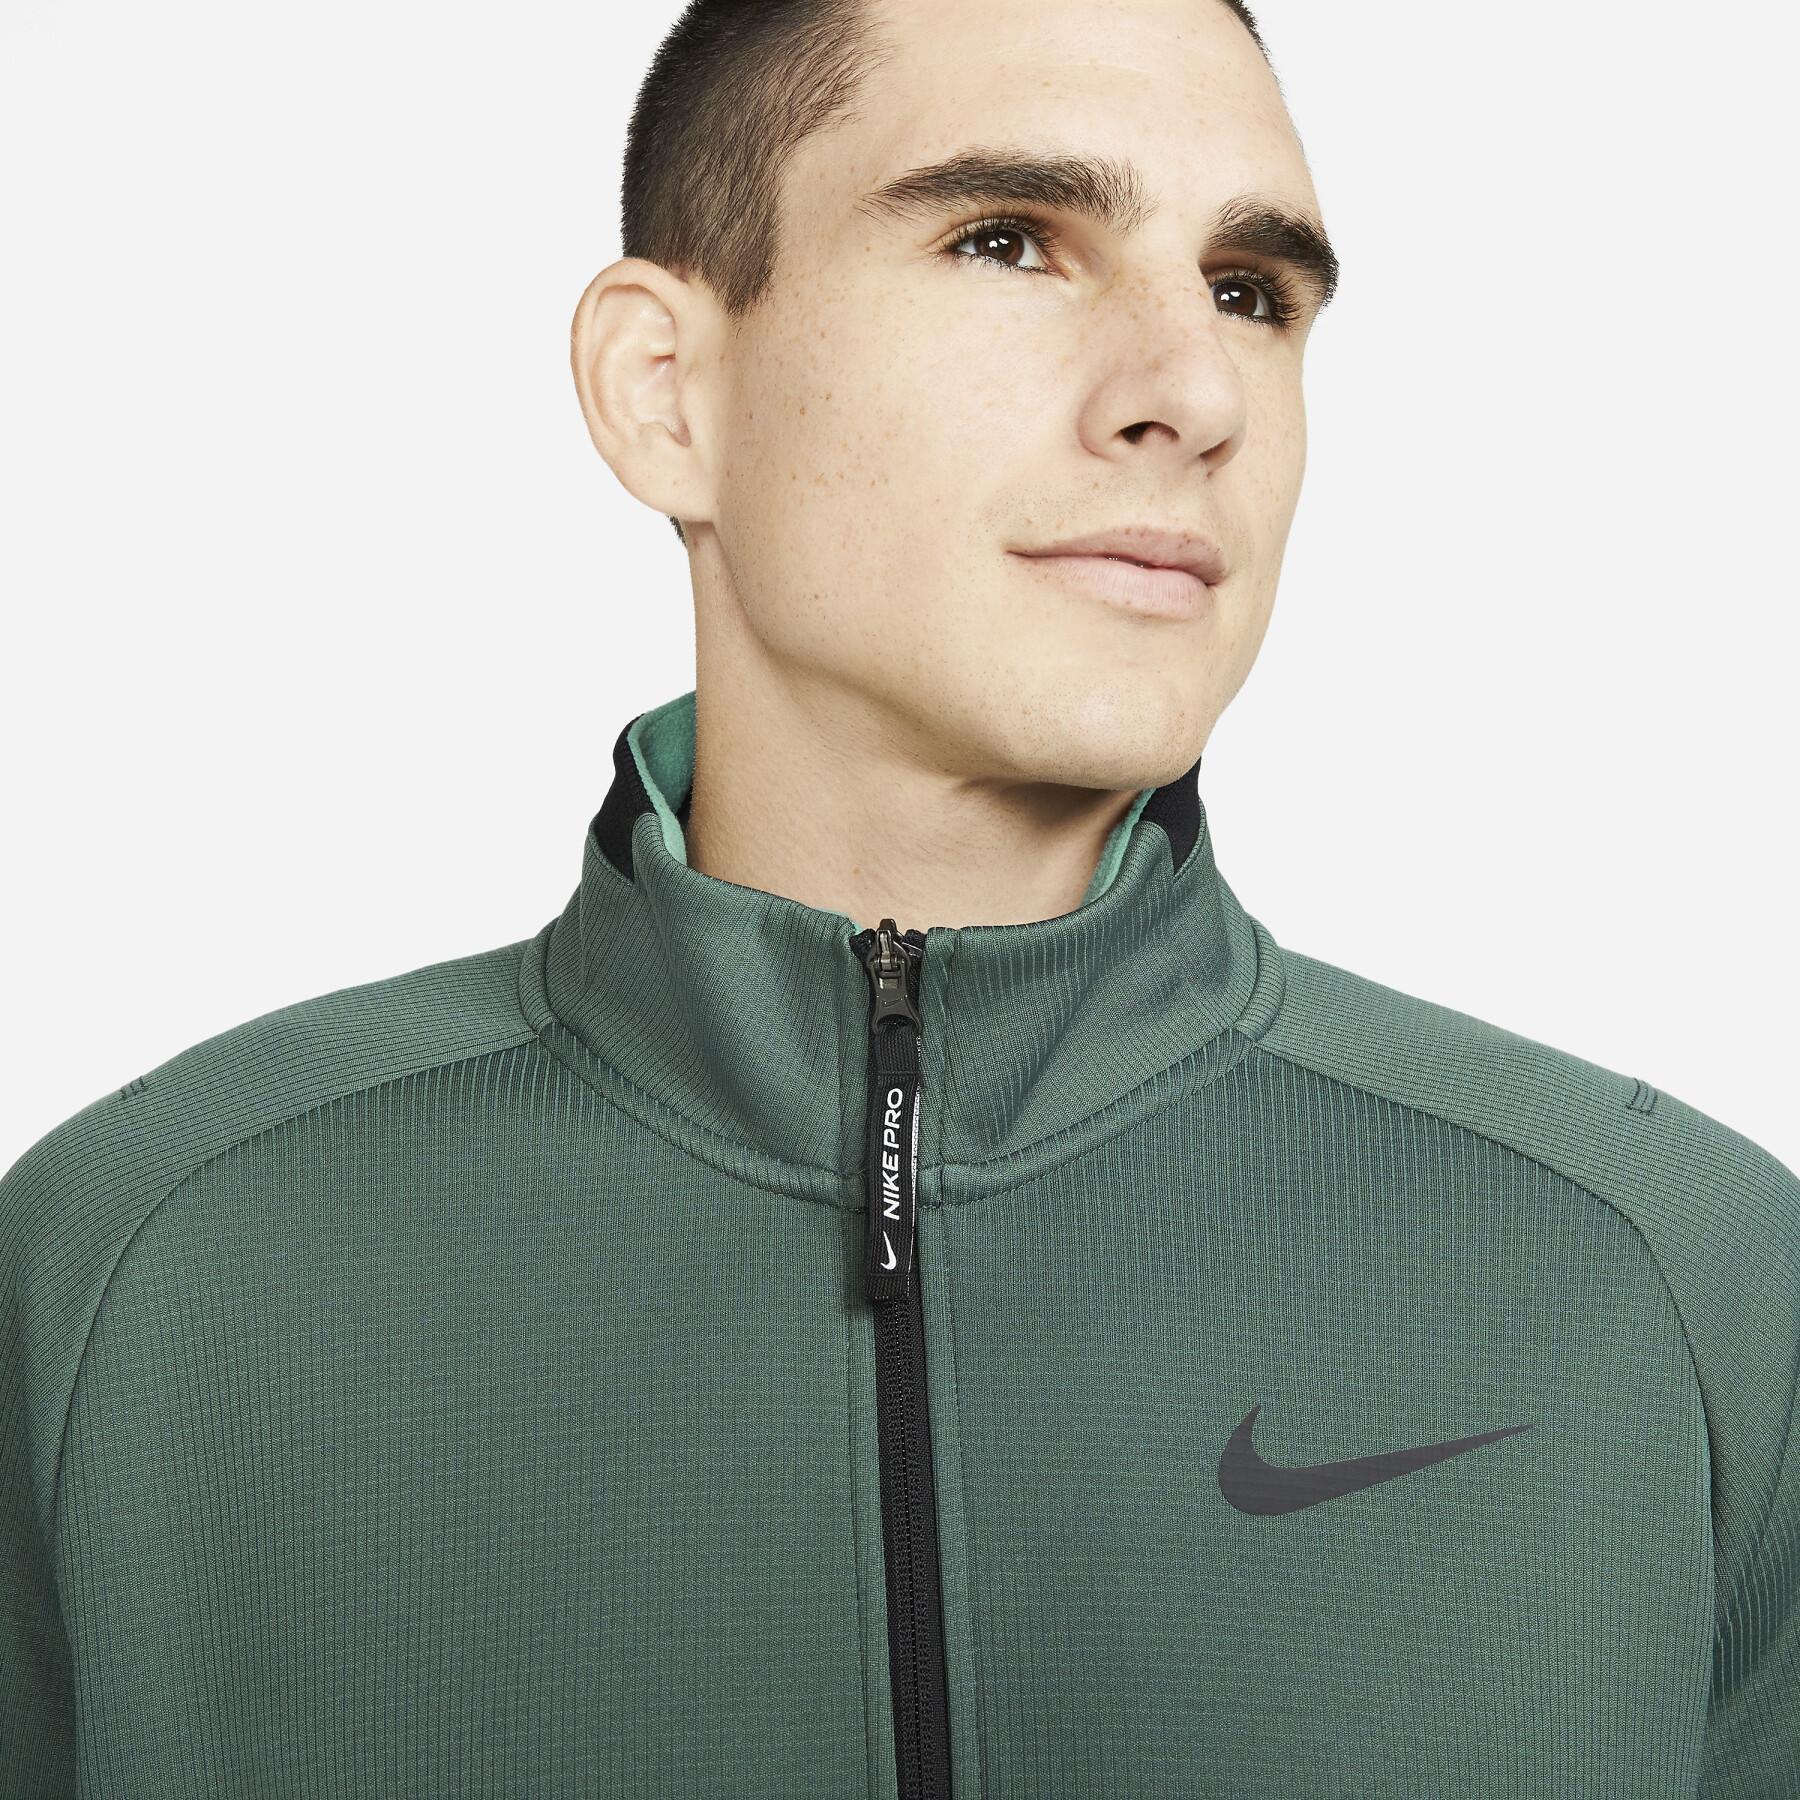 Sweat jacket 1/2 zip Nike Therma-Fit SPHR